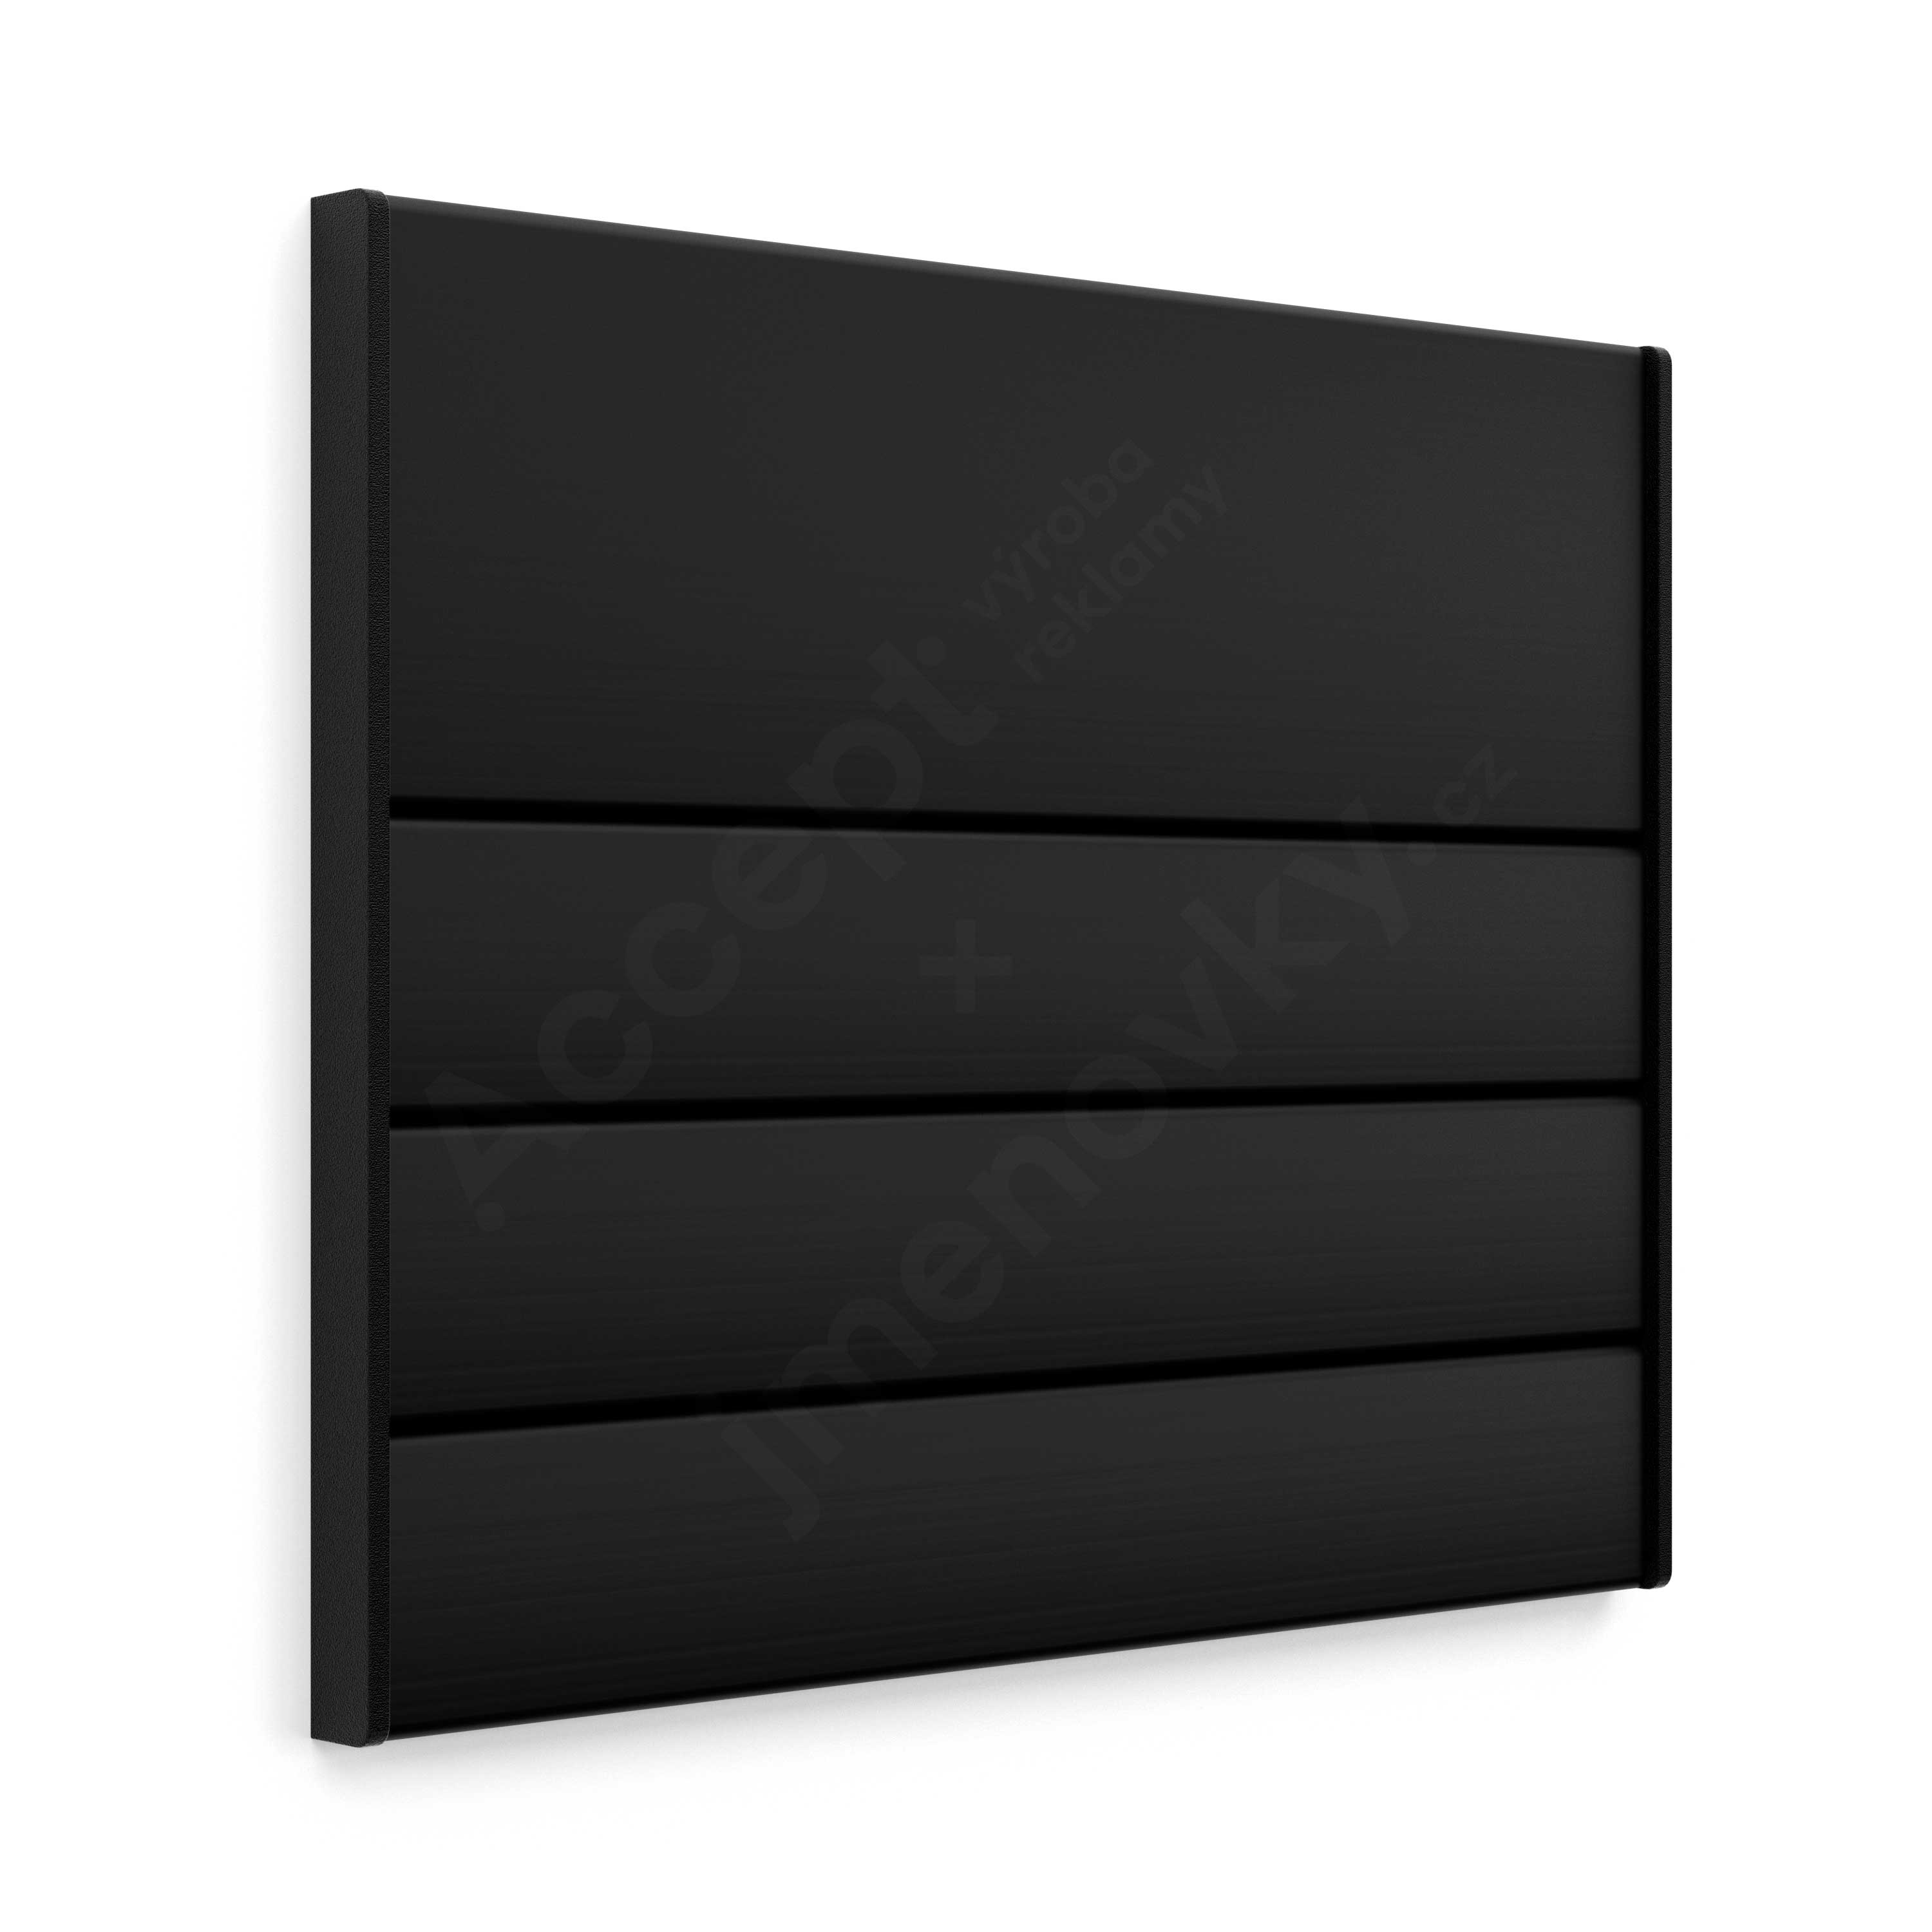 Dveřní tabulka ACS černá (nezásuvný systém, 187 x 156 mm)